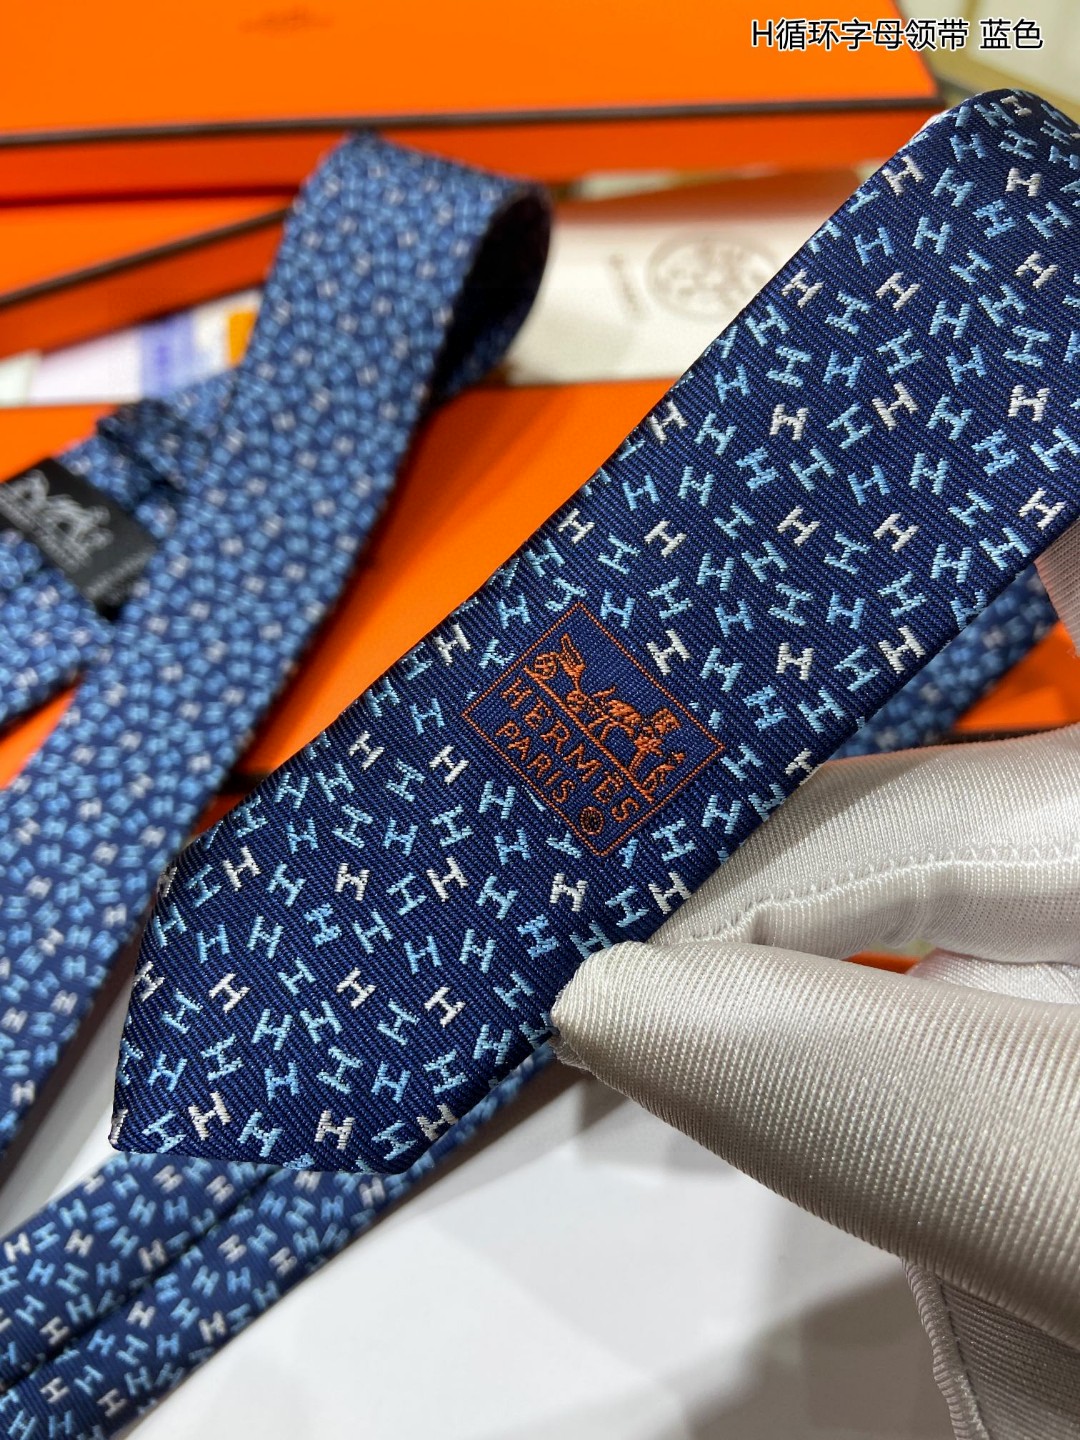 特价男士新款领带系列H循环字母领带稀有H家每年都有一千条不同印花的领带面世从最初的多以几何图案表现骑术活